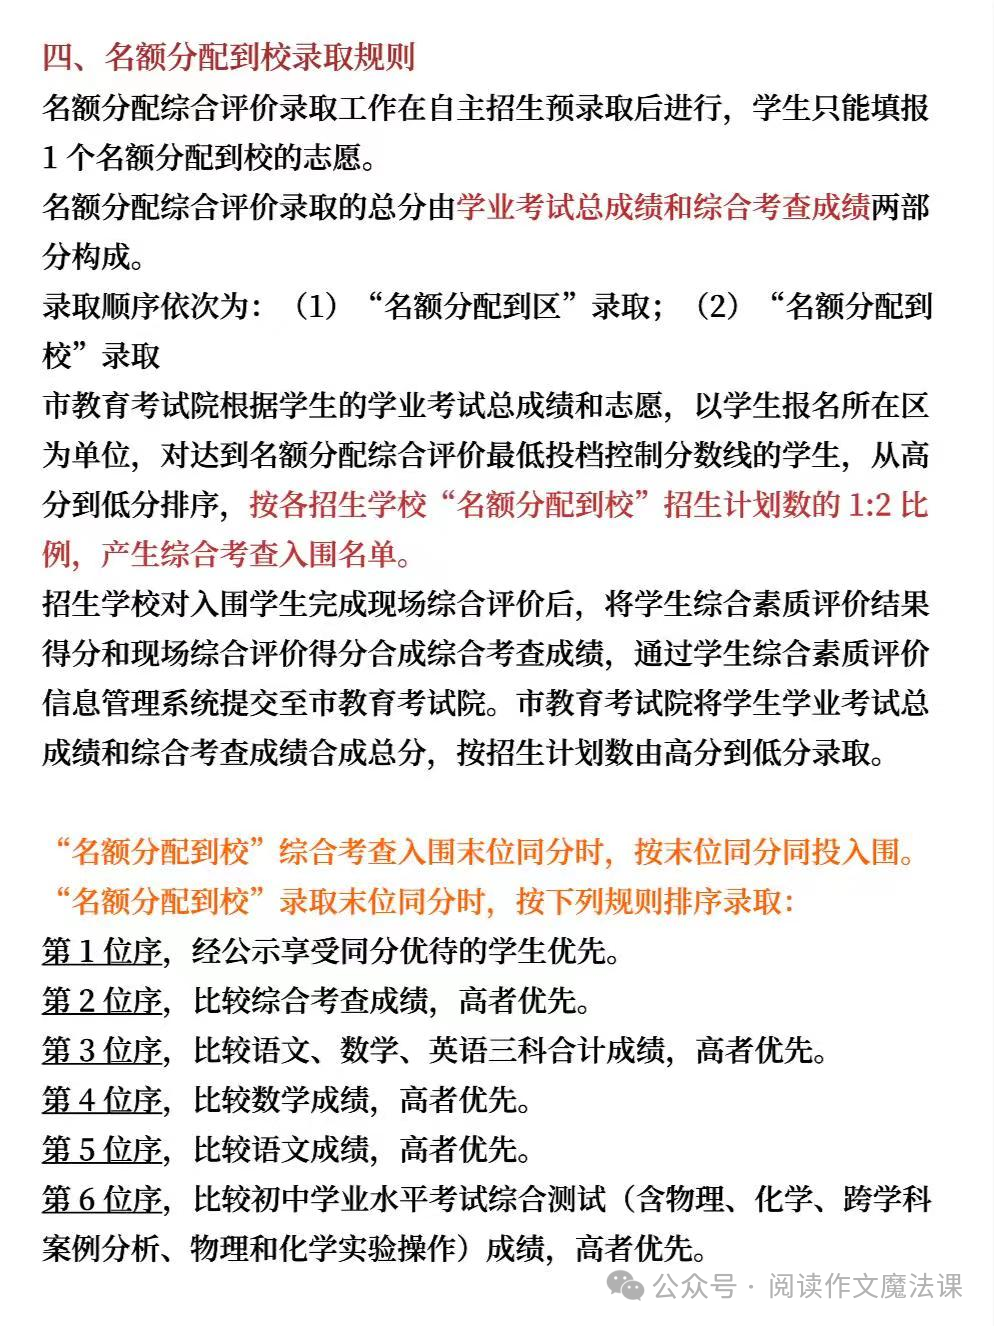 中考攻略:上海中考名额分配详解 第5张